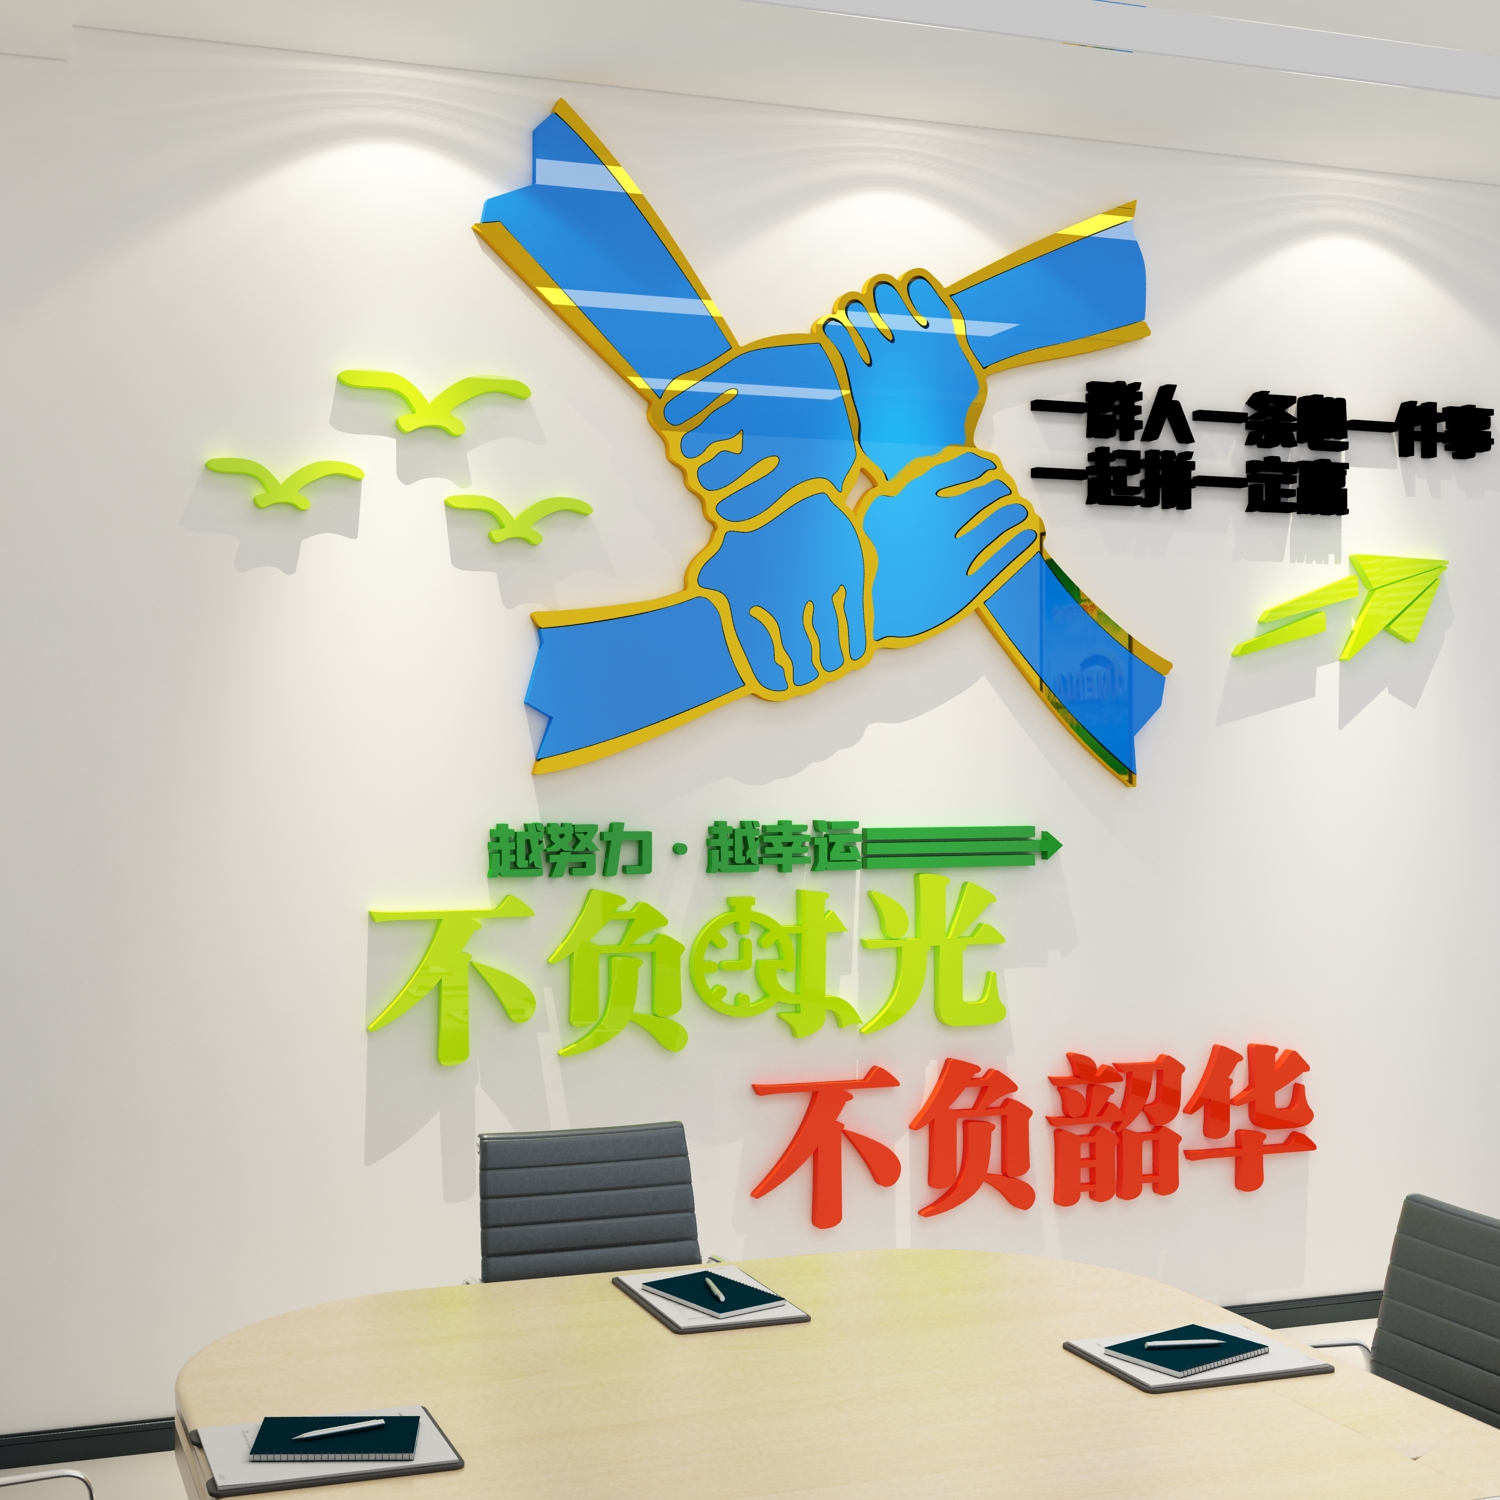 一群人件事条心励志墙面标语会议公司企业文化设计办公室区装饰画